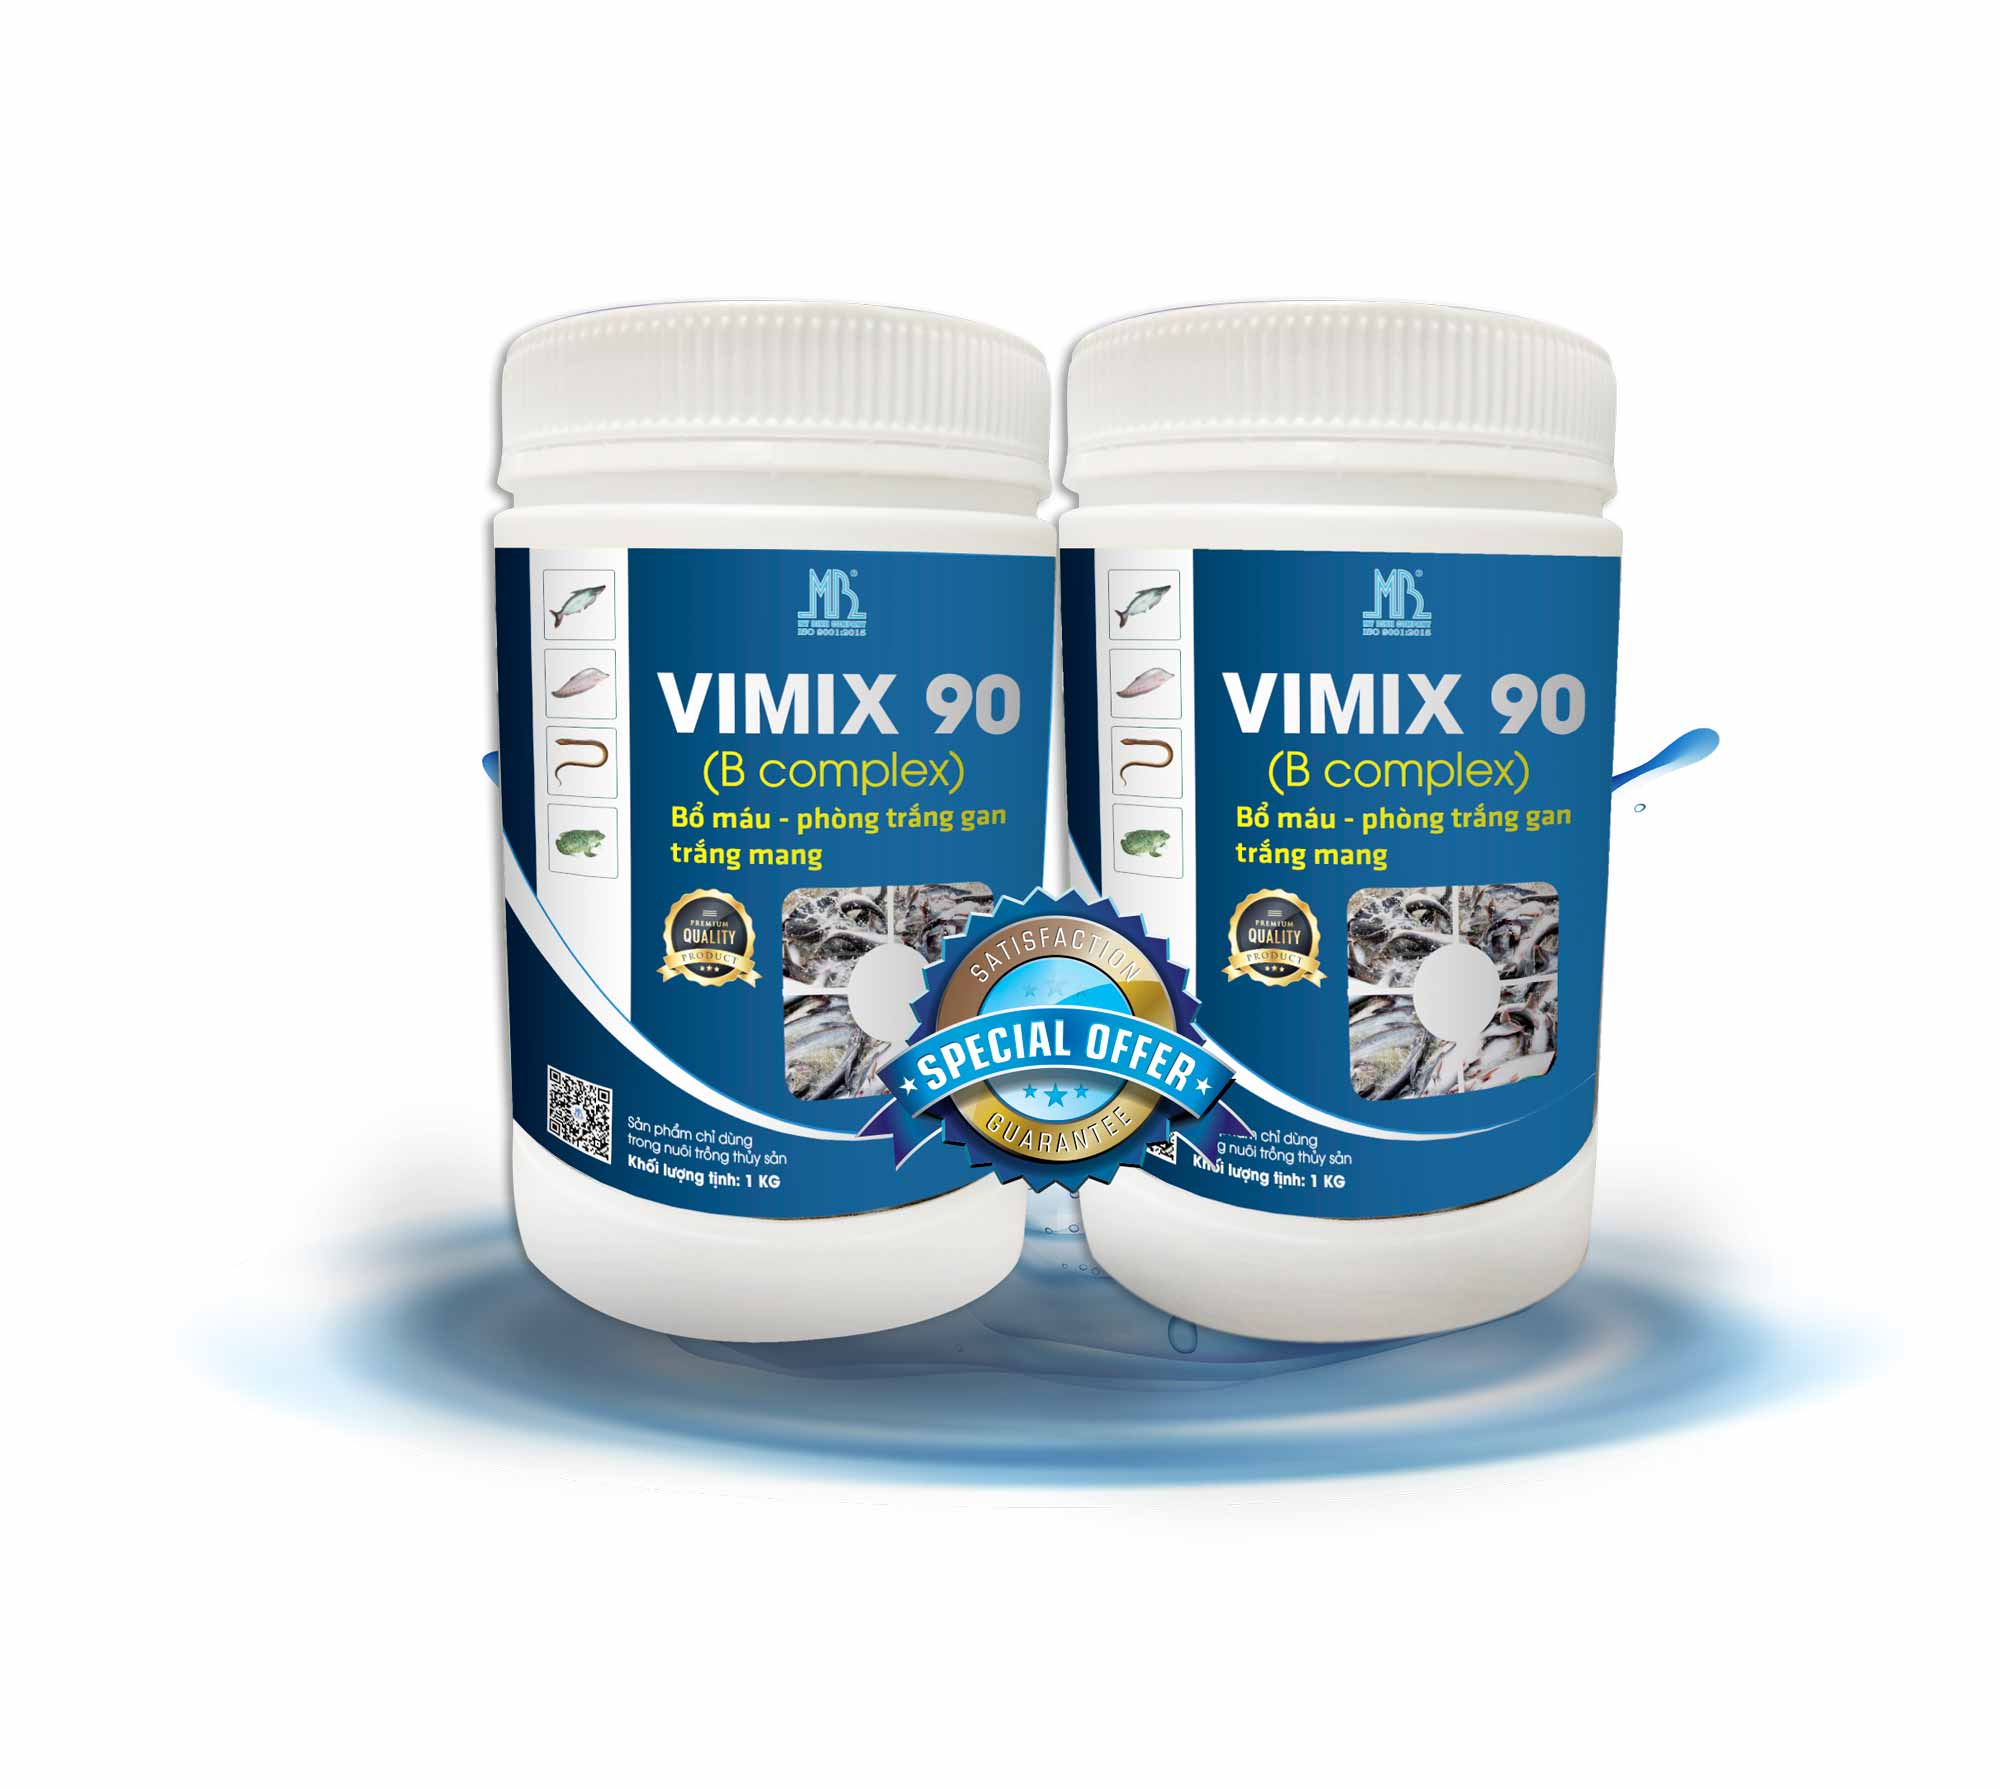 VIMIX 90  bổ máu, phòng trắng gan, trắng mang cho cá